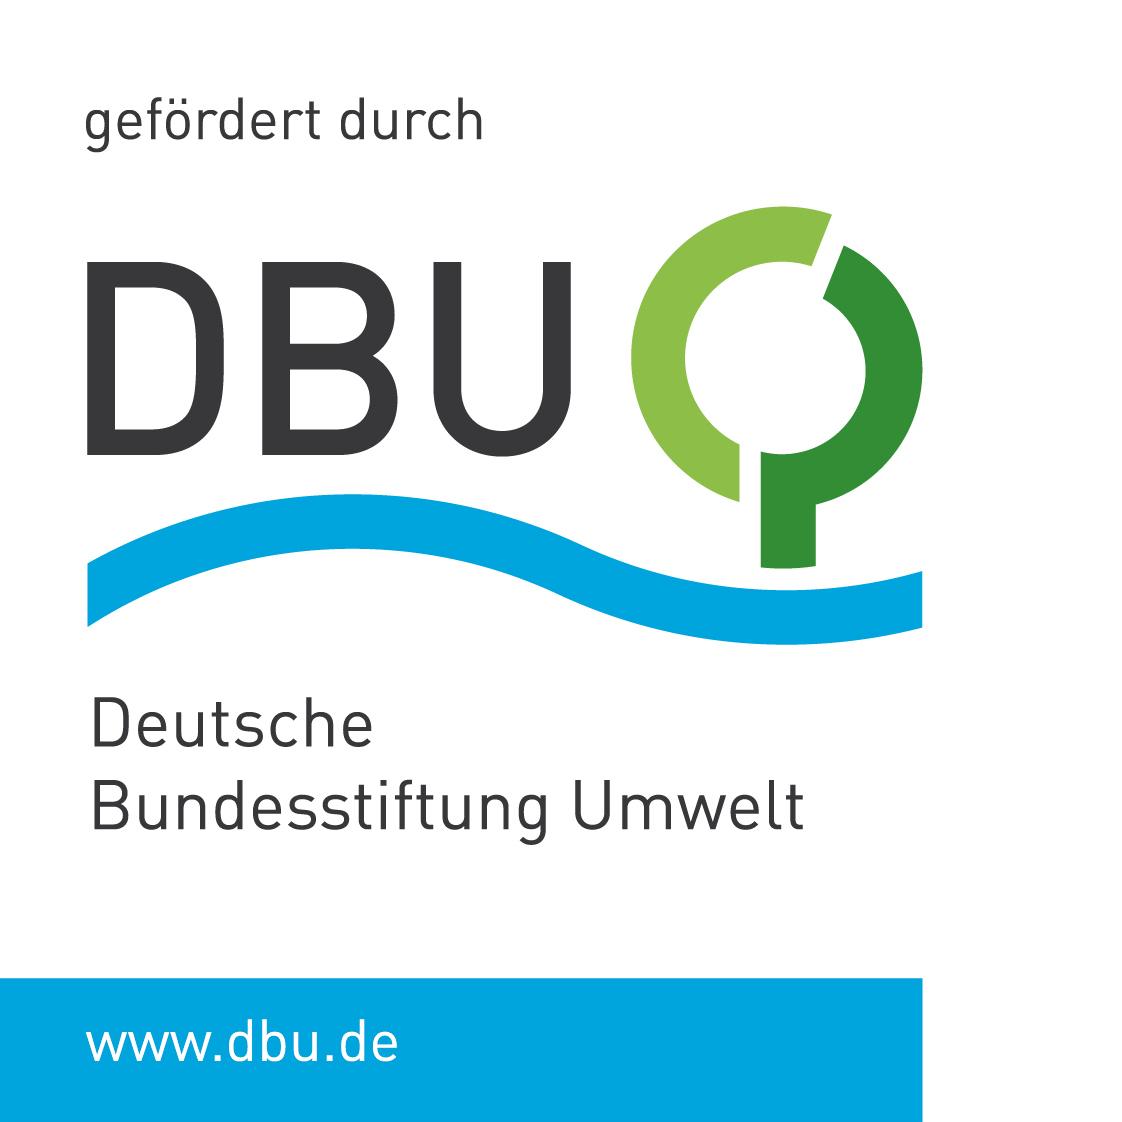 Das Logo der Deutschen Bundesstiftung Umwelt